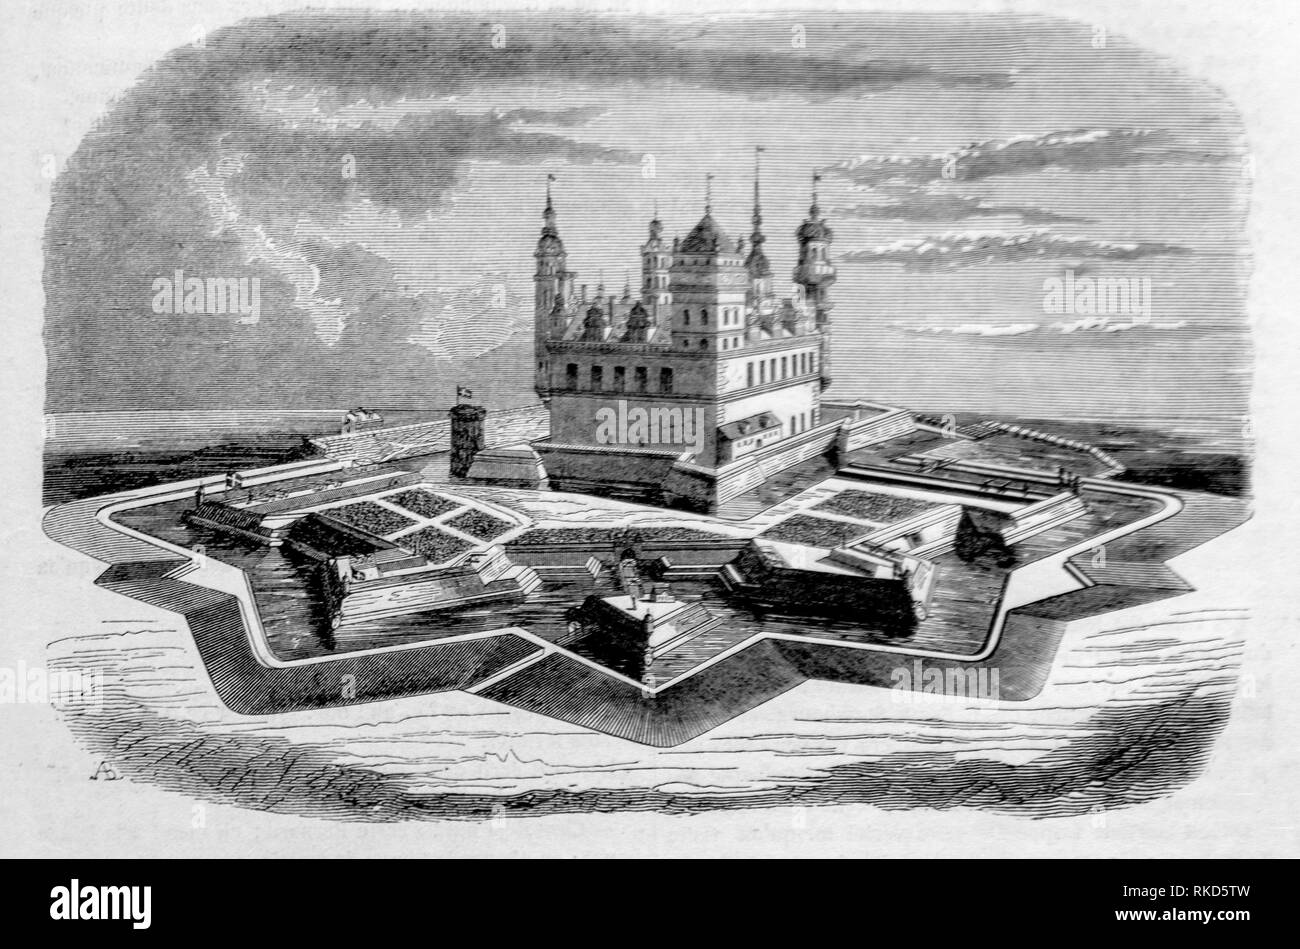 Dänemark. Kronborg (Zeichnung 1843). Kronborg ist ein Schloss und Festung in der Stadt Helsingør, Dänemark. Unsterblich wie Elsinore in William Stockfoto